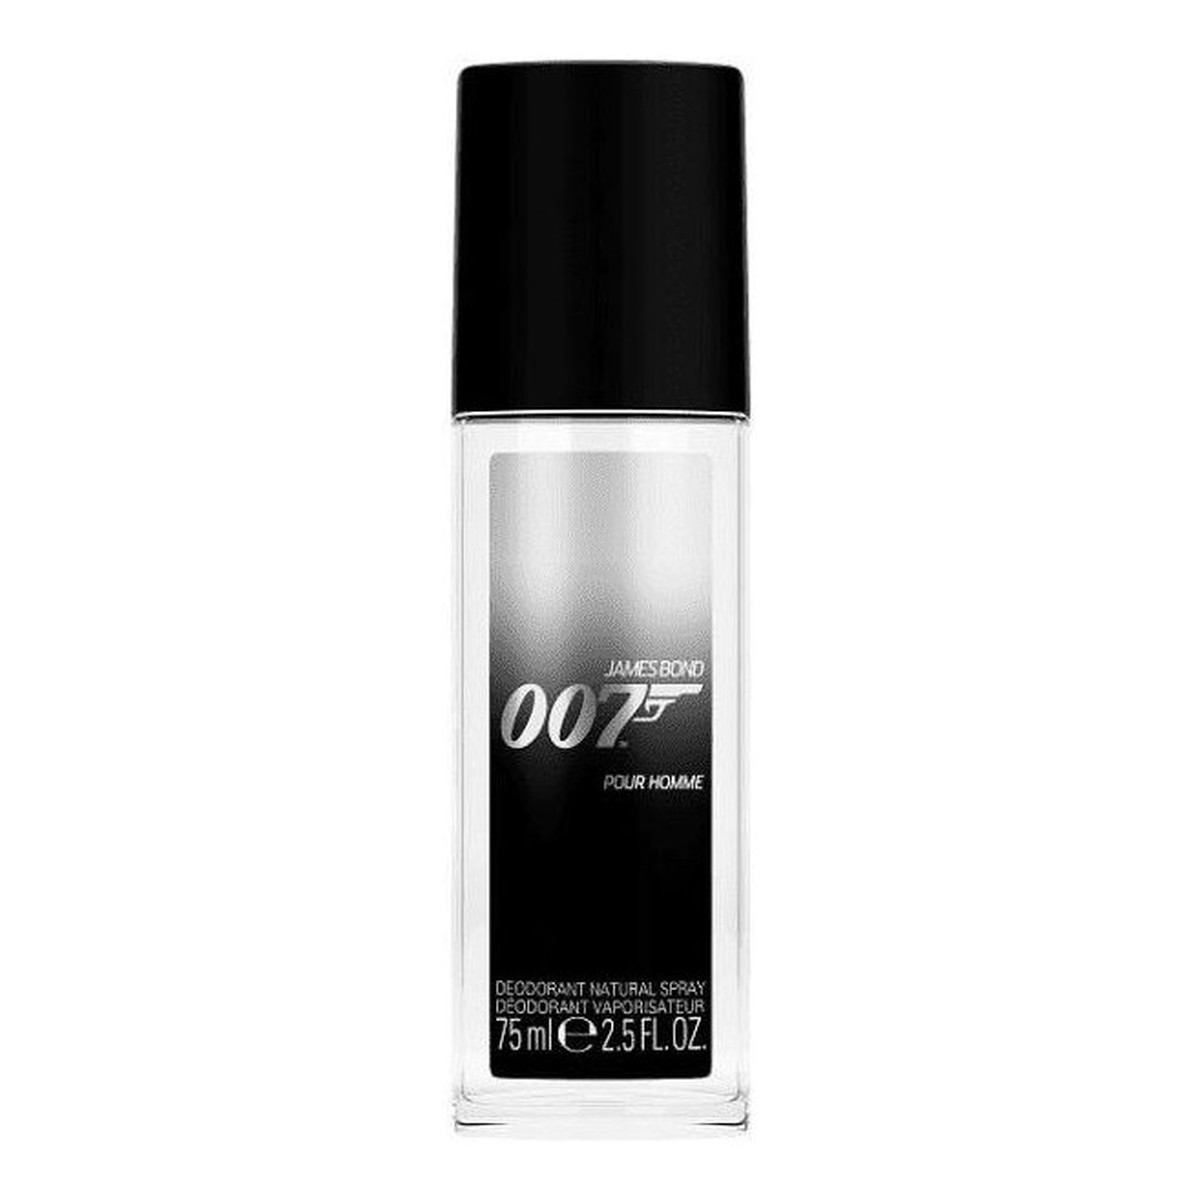 James Bond 007 Movie For Man dezodorant spray 75ml